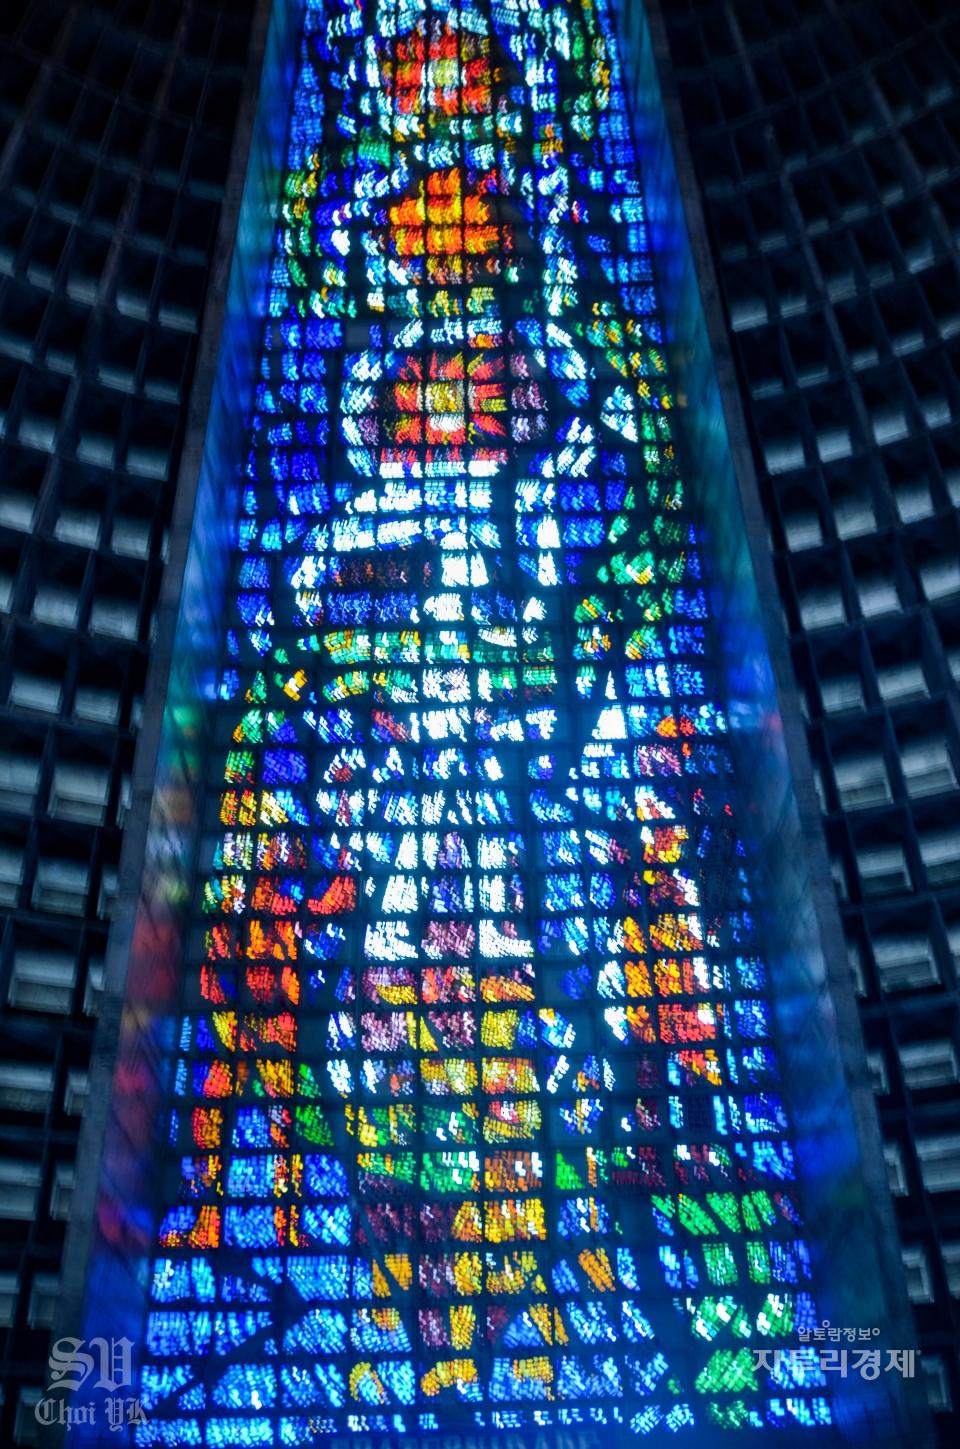 성당건물의 천정과 성당건물의 측면에 스테인드 글라스를 해놓아 이곳을 통해 빛이 들어와 성당을 밝히면 장관을 이룬다.주소: Av. Chile, 245 - Centro, Rio de Janeiro - RJ, 20031-170 브라질. 높이: 75m.        Photo by 최영규